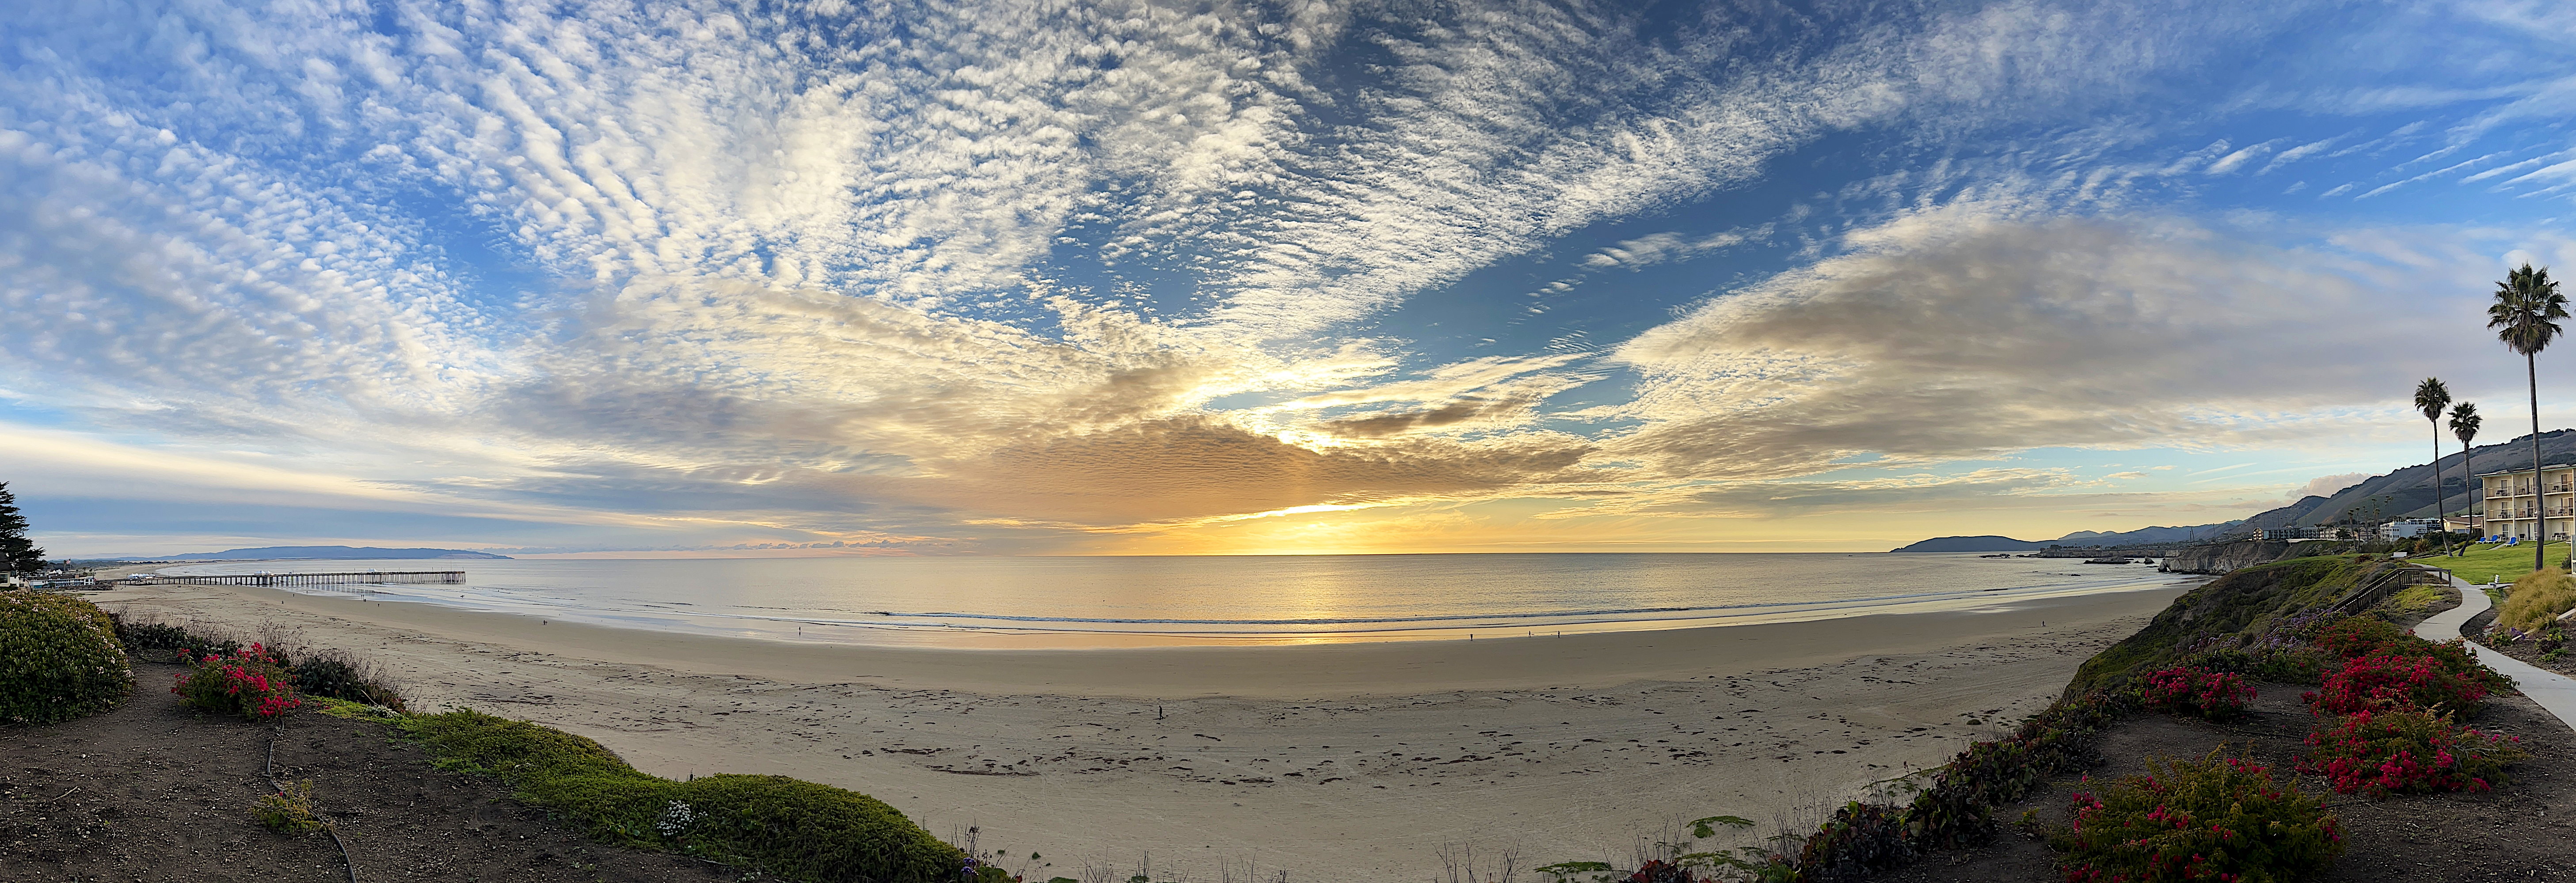 Panorama-Foto, fast 180°. Es zeigt den Strand und die tollen Wolken eine halbe Stunde vor Sonnenuntergang.